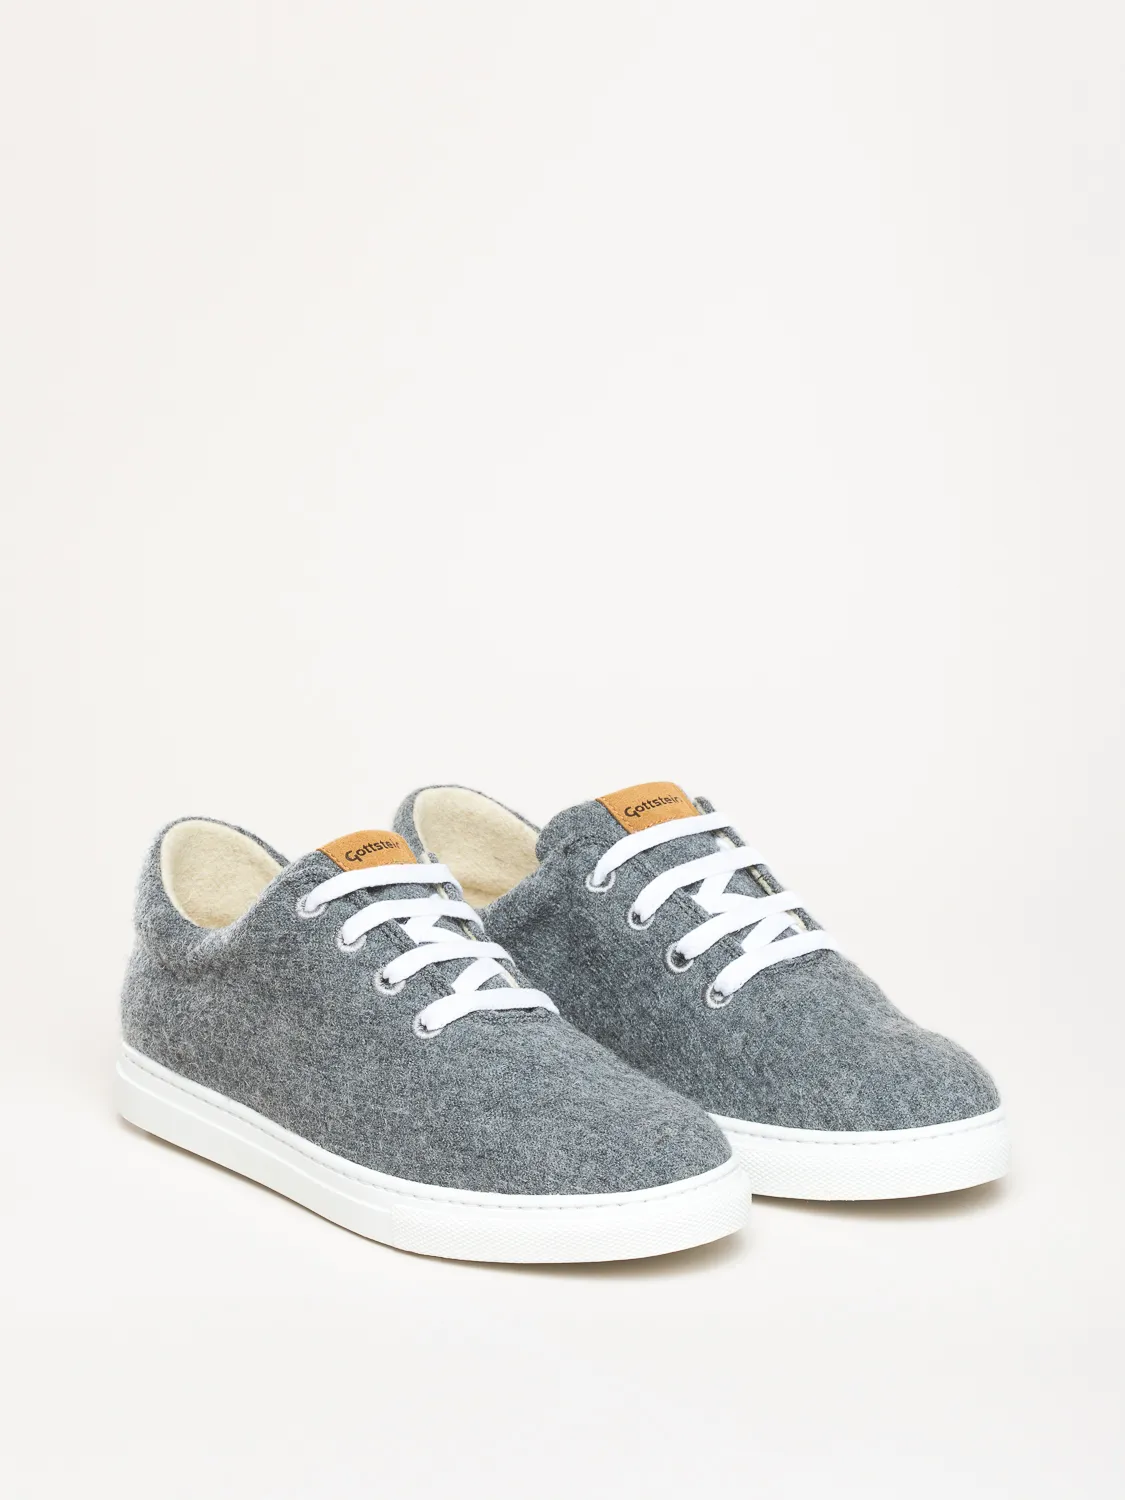 Gottstein-Wool-Walker-101-Woll-Sneaker-grey (6)